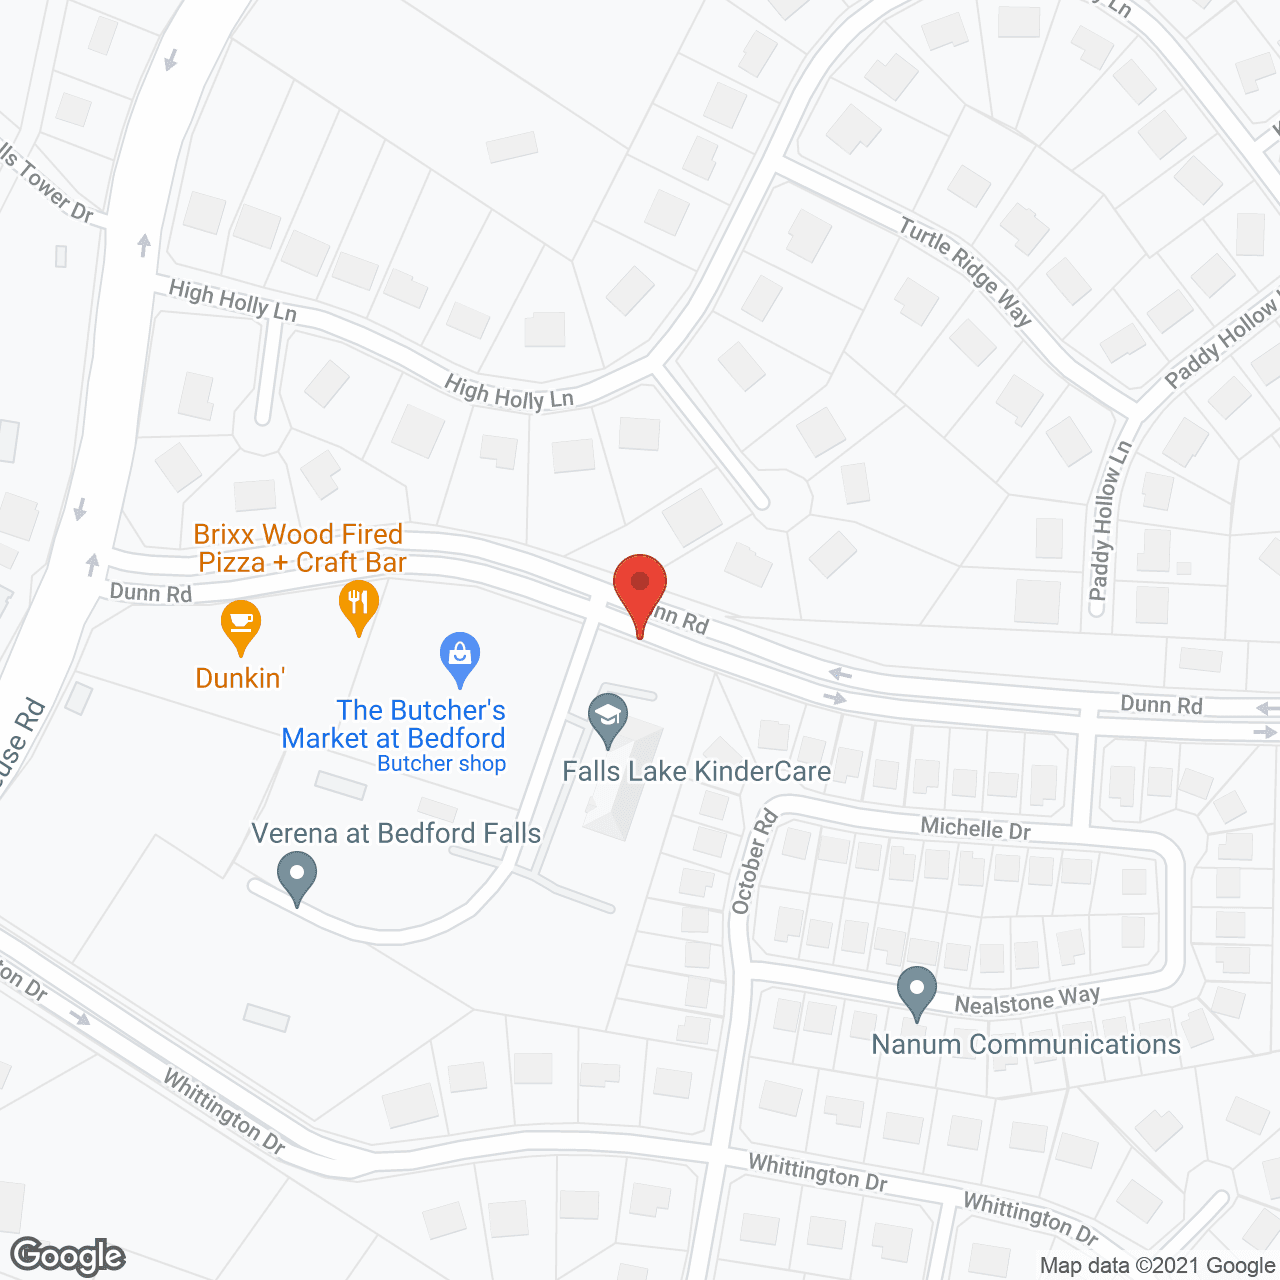 Verena at Bedford Falls in google map